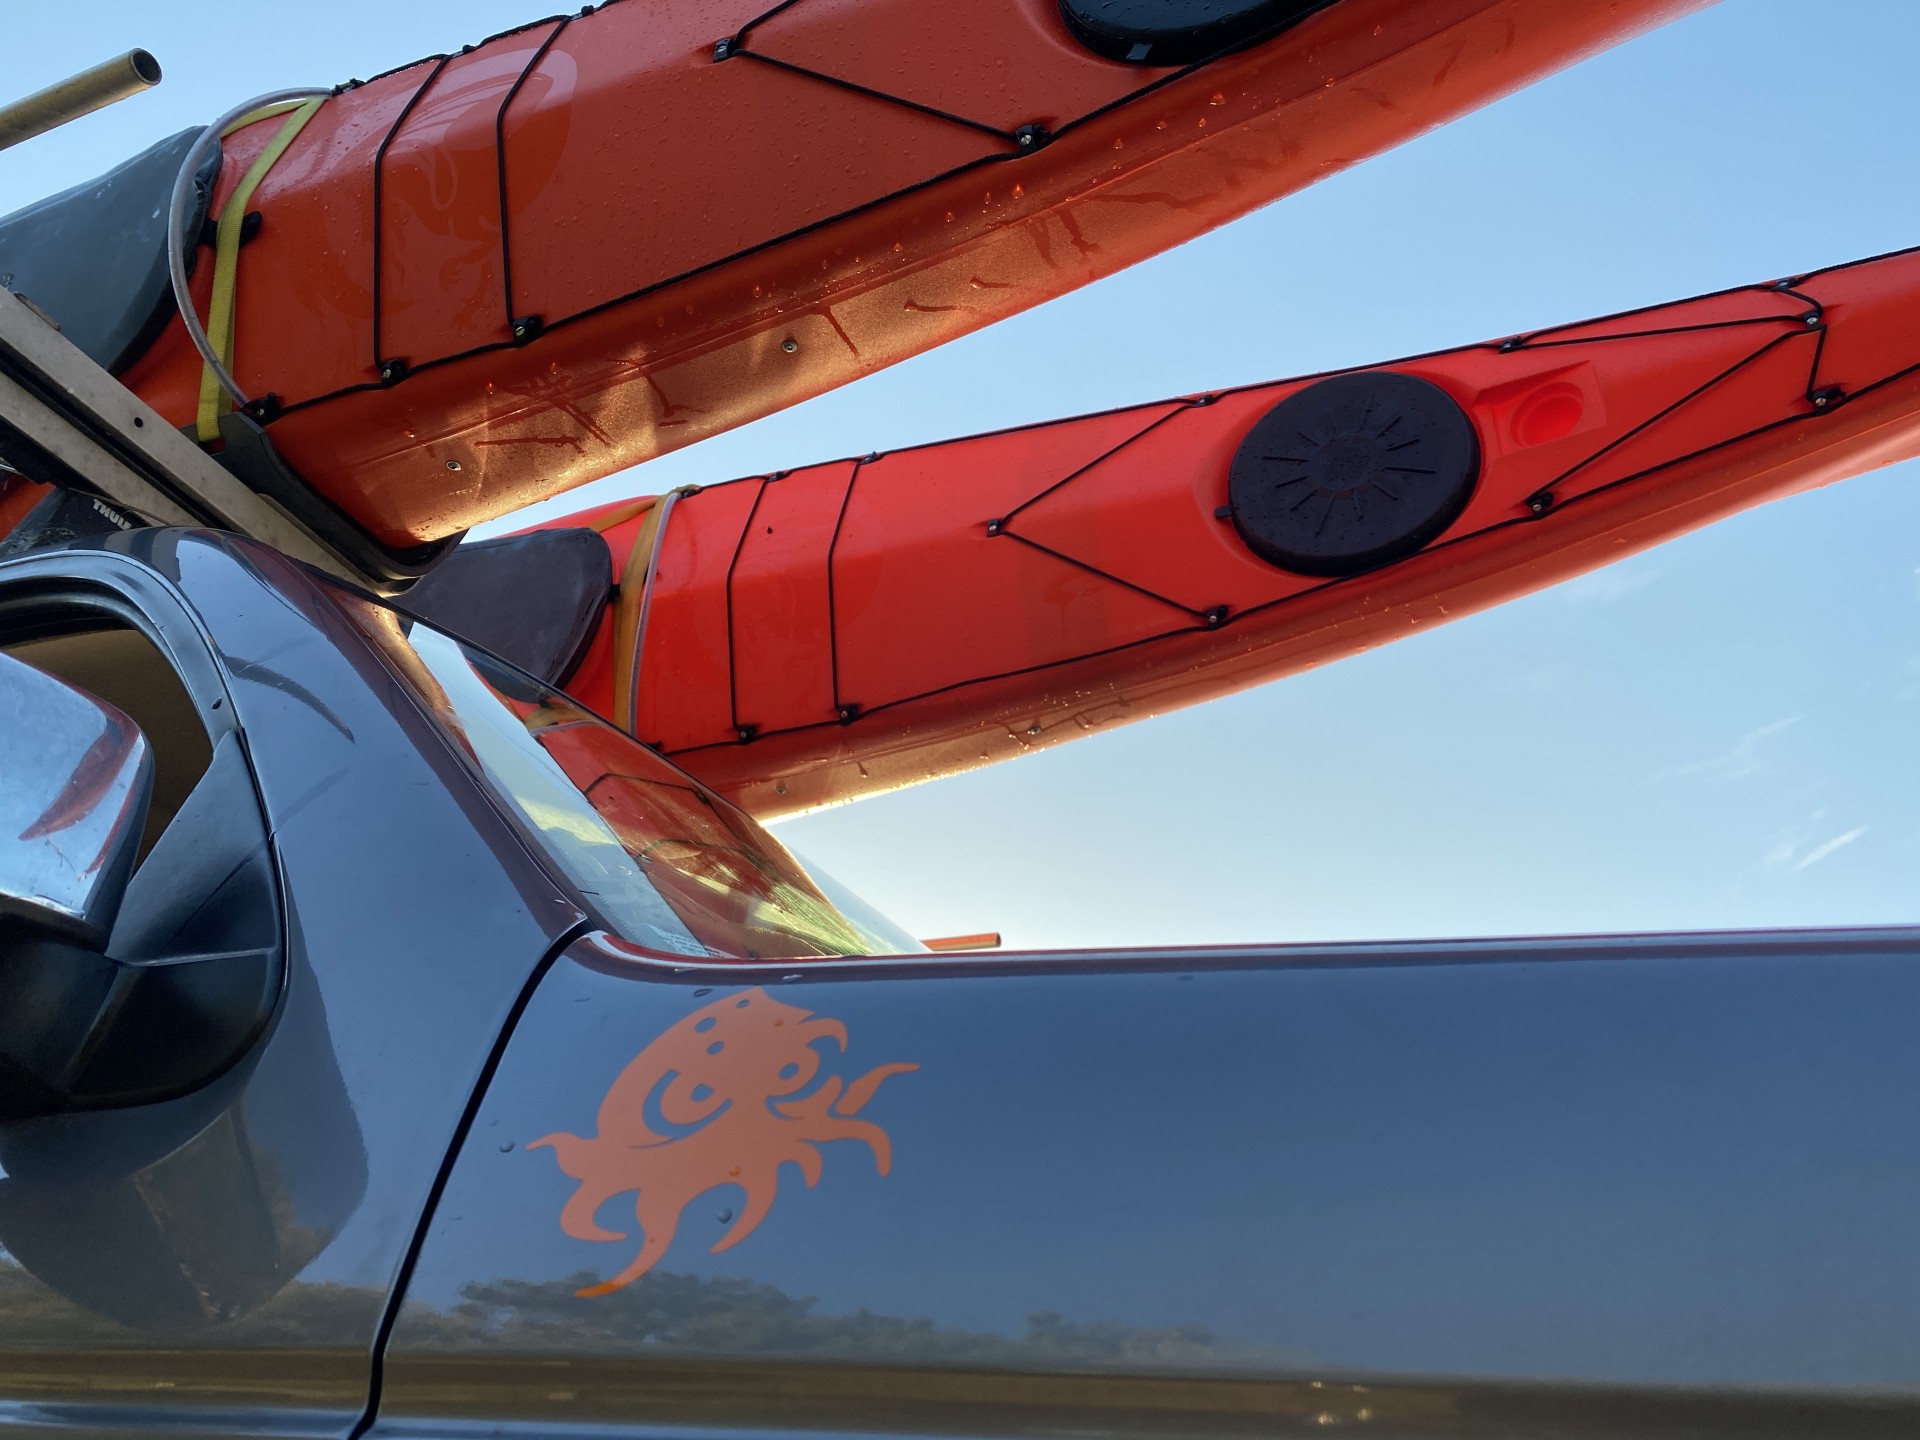 Orange sea kayaks on the roof of a vehicle.